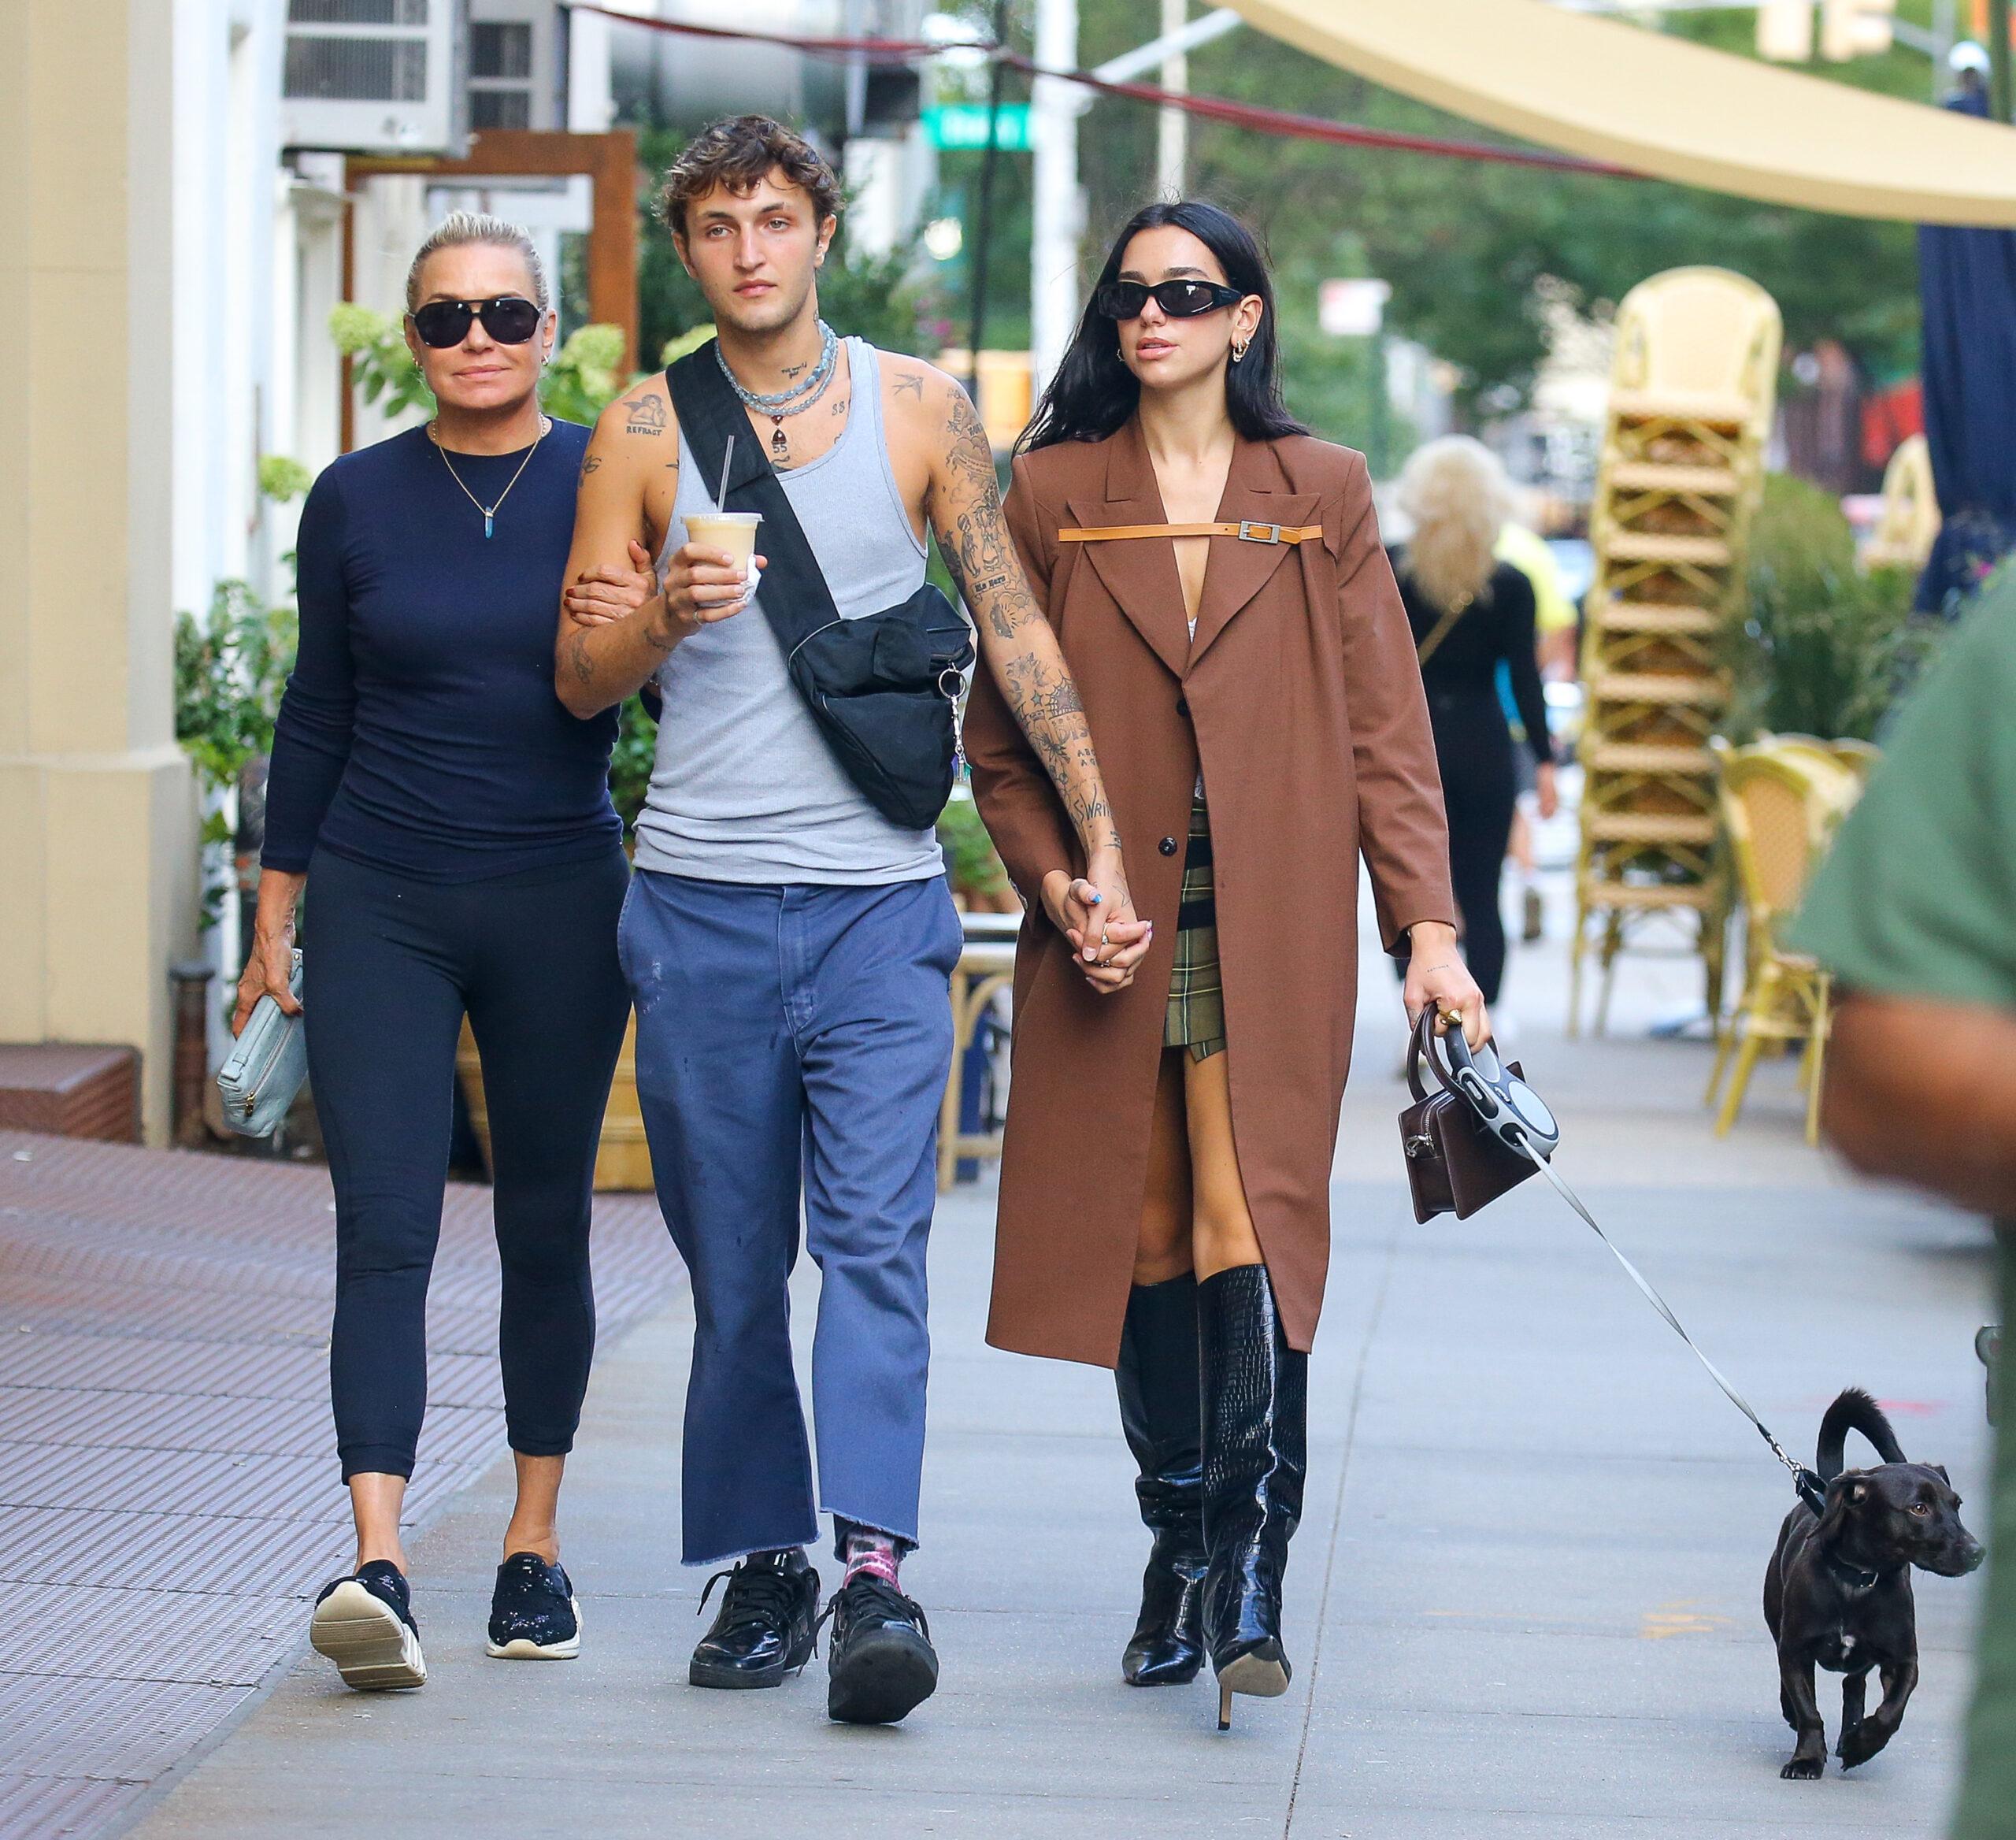 Dua Lipa Anwar Hadid and mom Yolanda Hadid seen walking around with Dua apos s dog in NYC